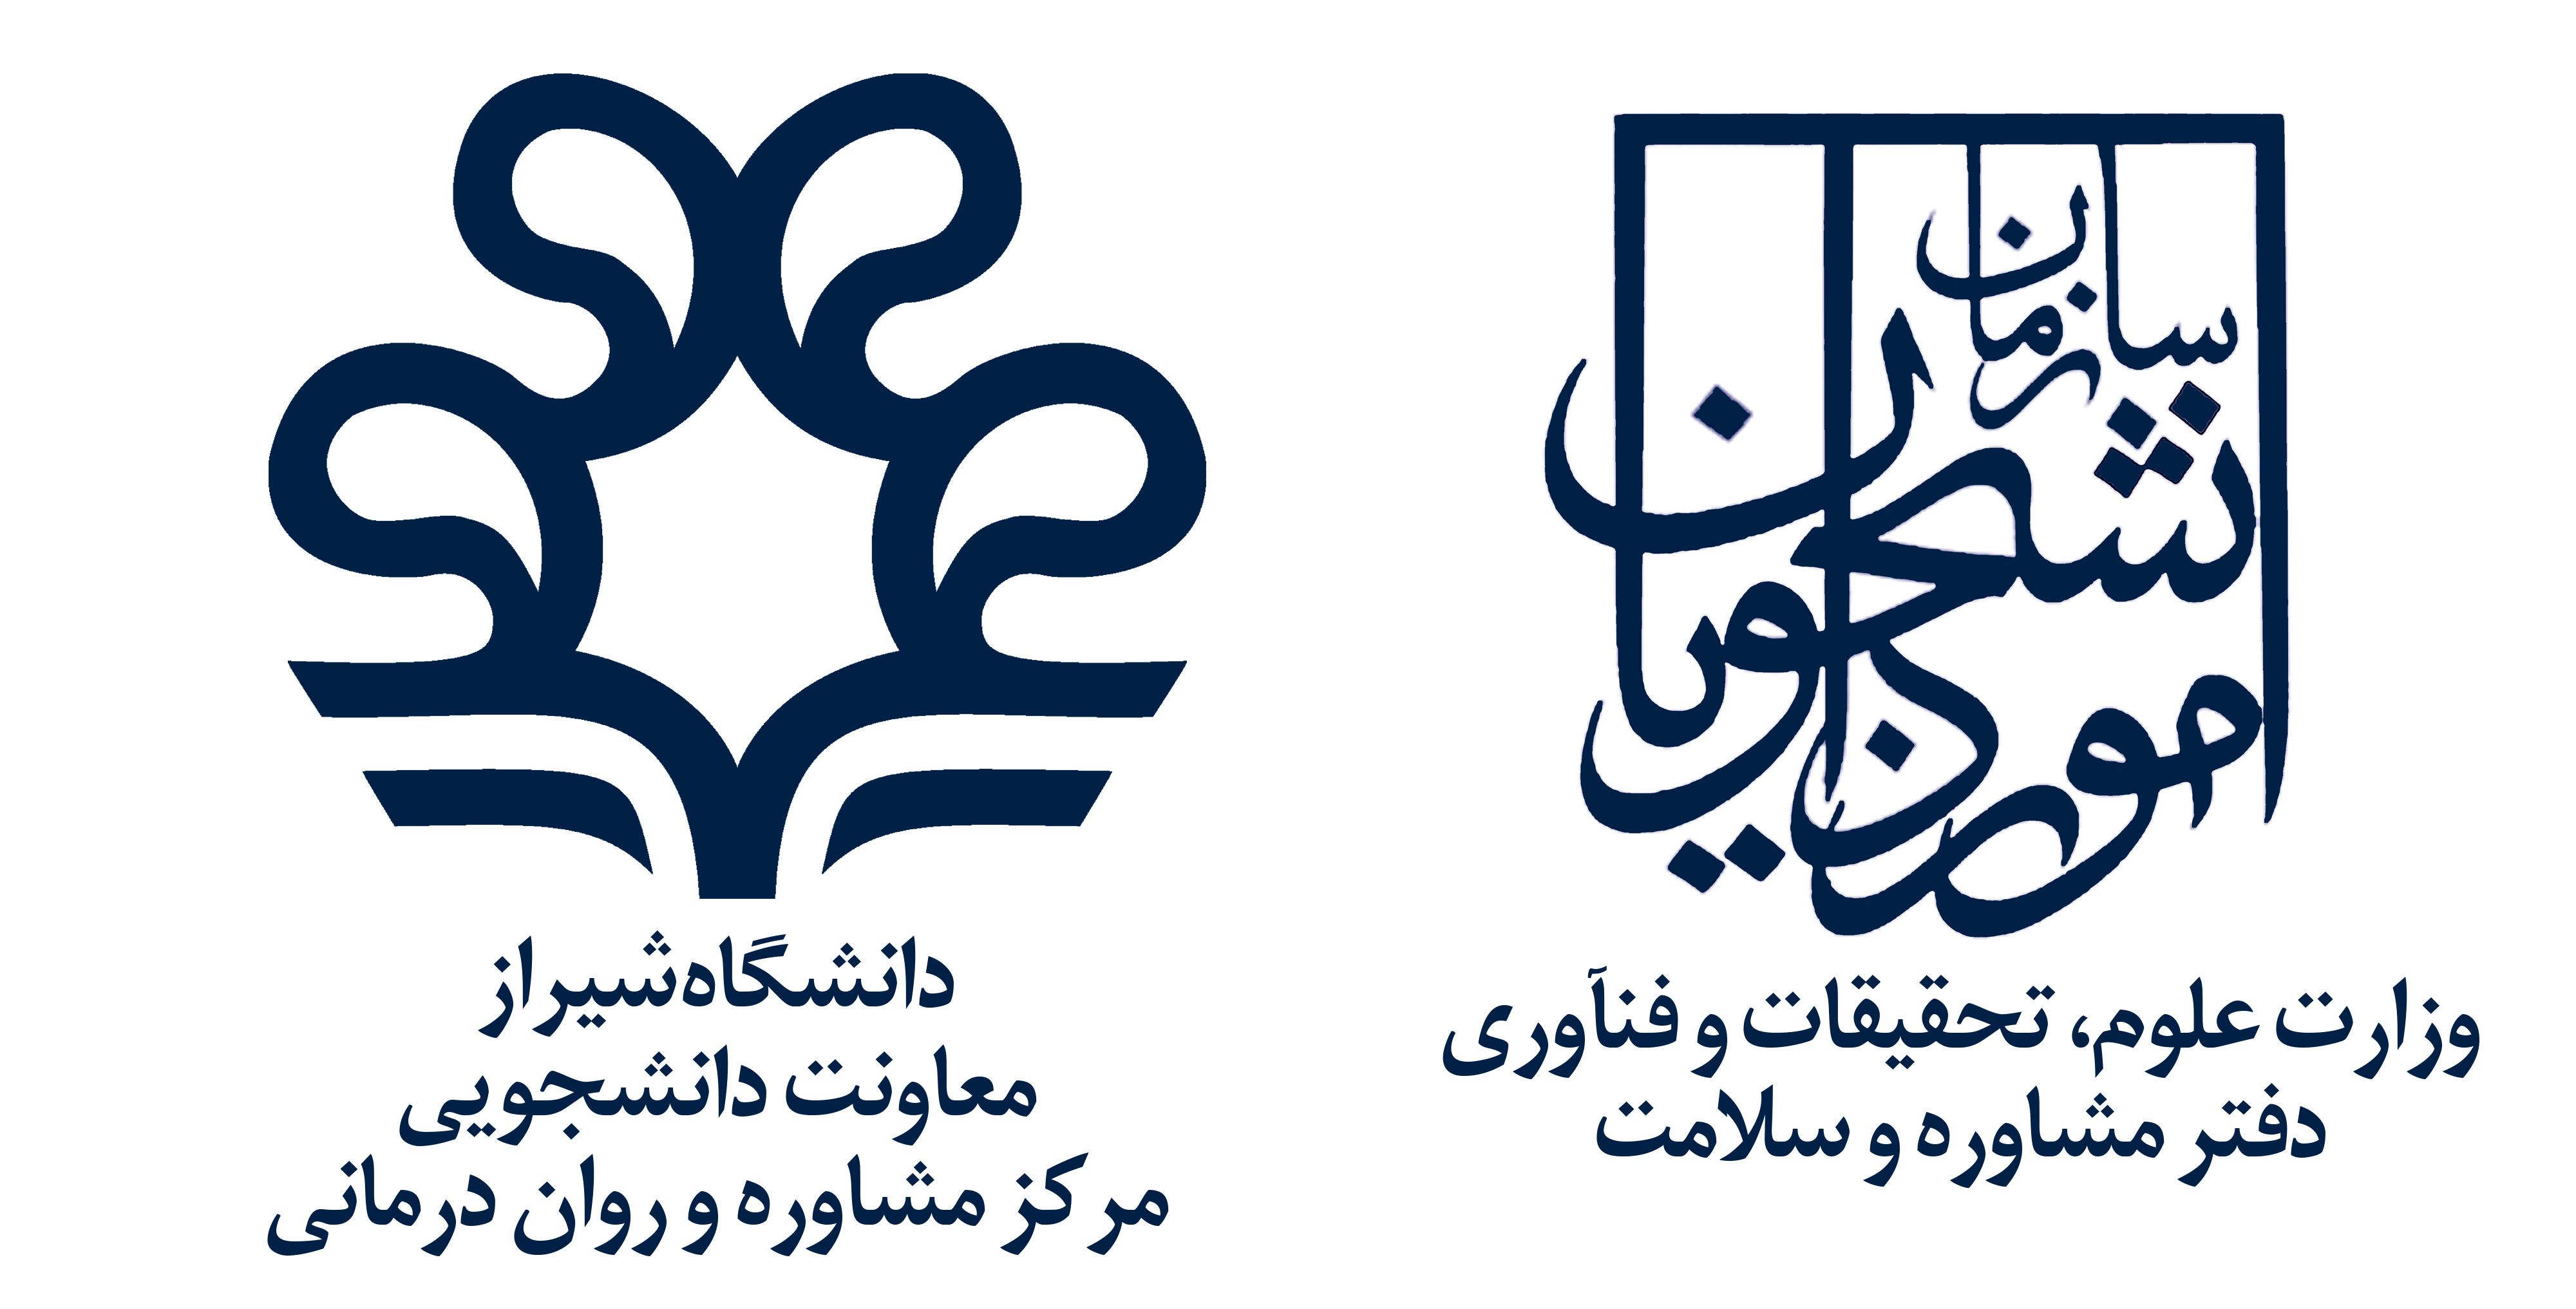 مرکز مشاوره و روان درمانی دانشگاه شیراز با همکاری دفتر مشاوره و سلامت وزارت علوم -